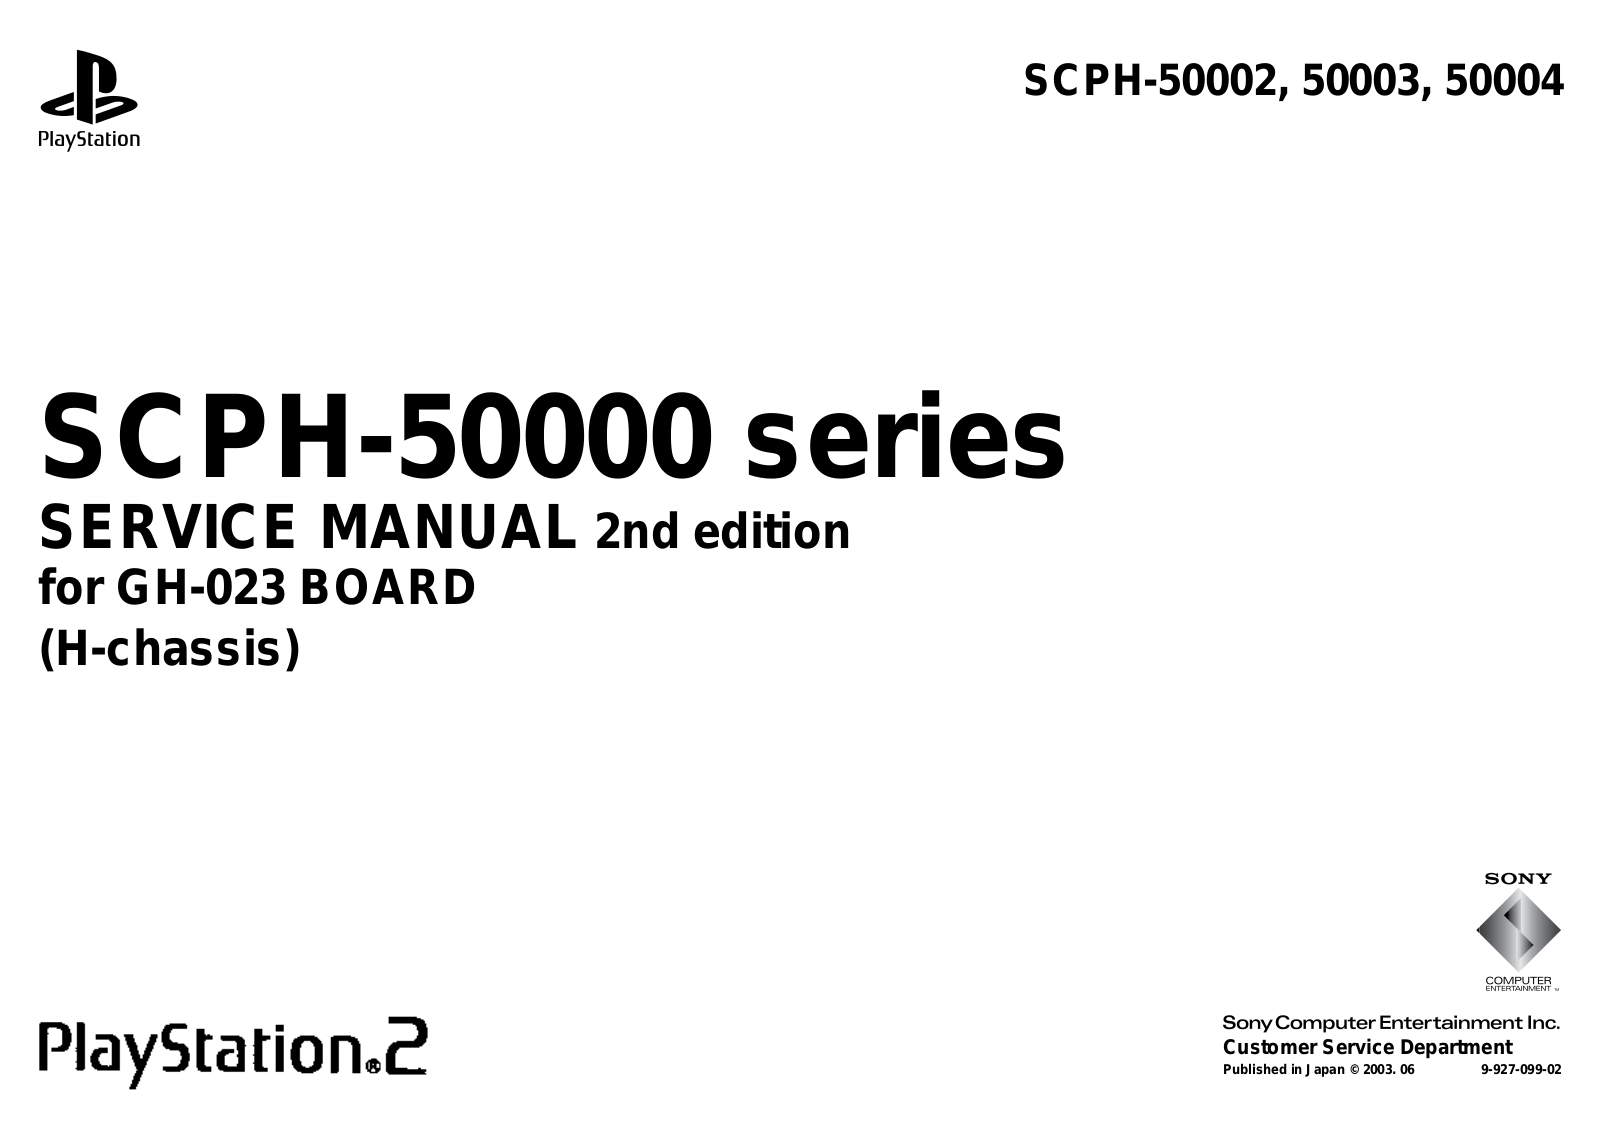 SONY SCPH 50002, SCPH-50000, SCPH 50003, SCPH 50004, SCPH-50002 Service Manual